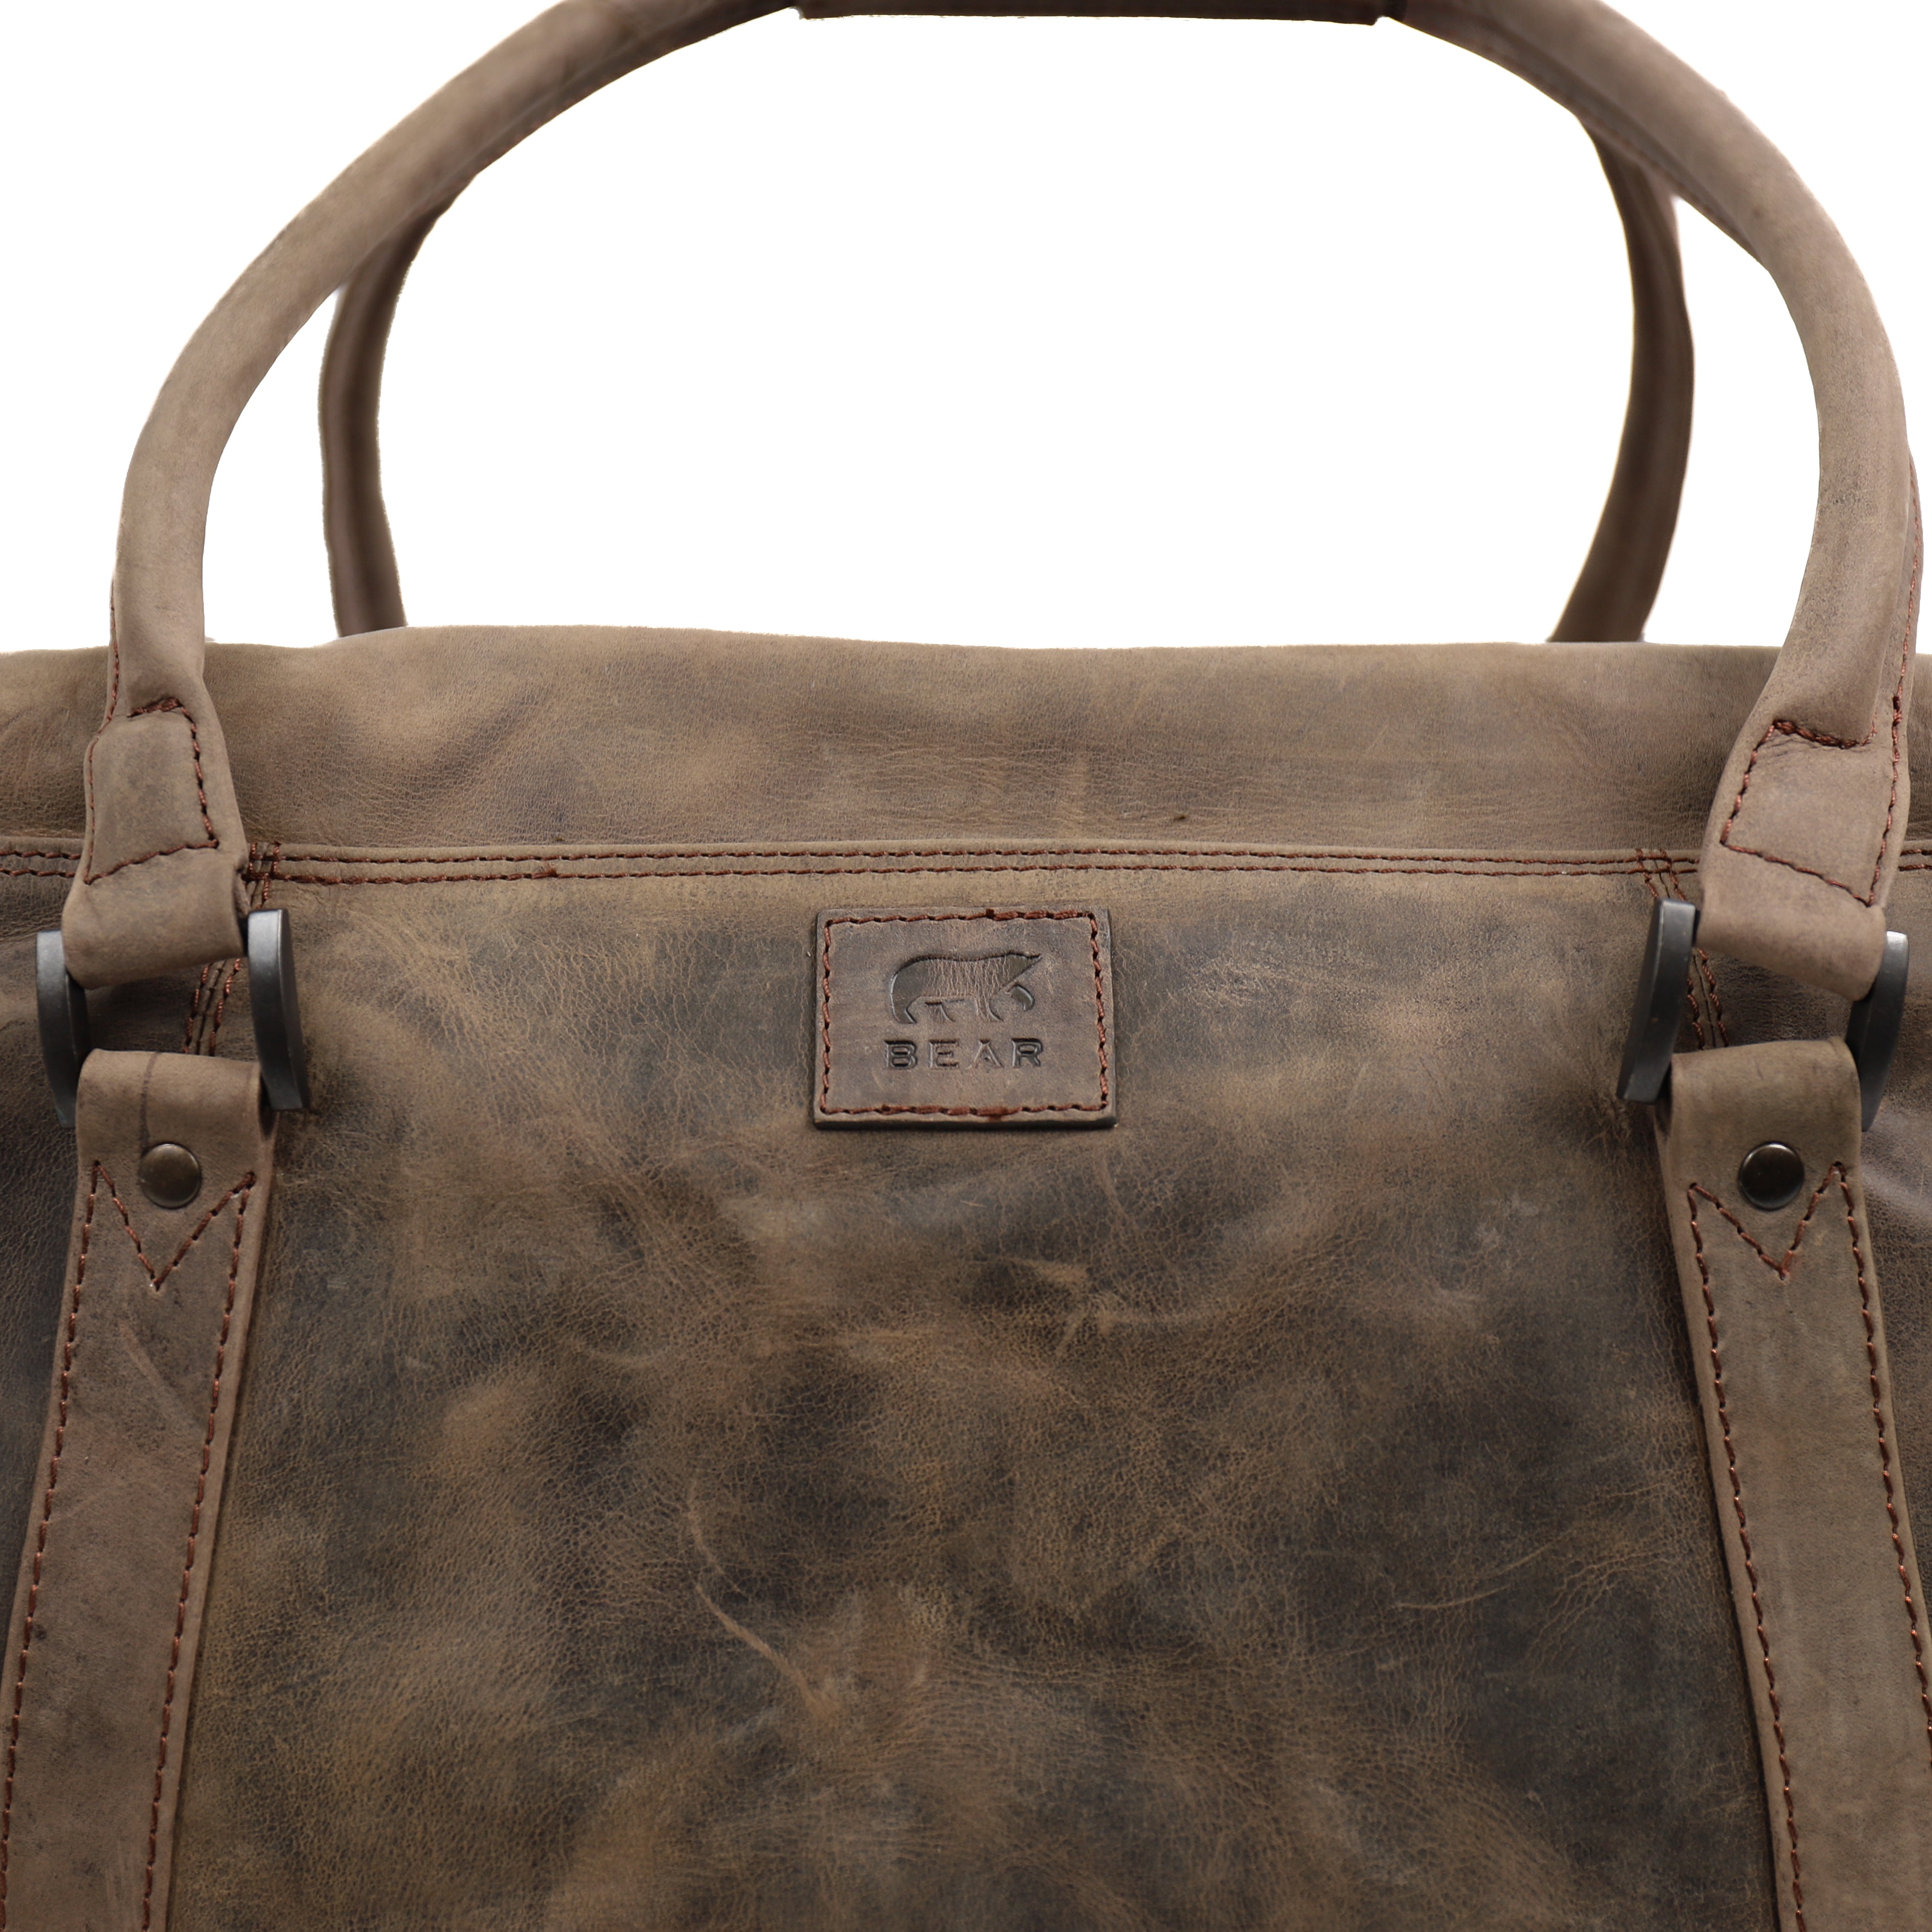 Weekend bag 'Max' brown - HD 5643